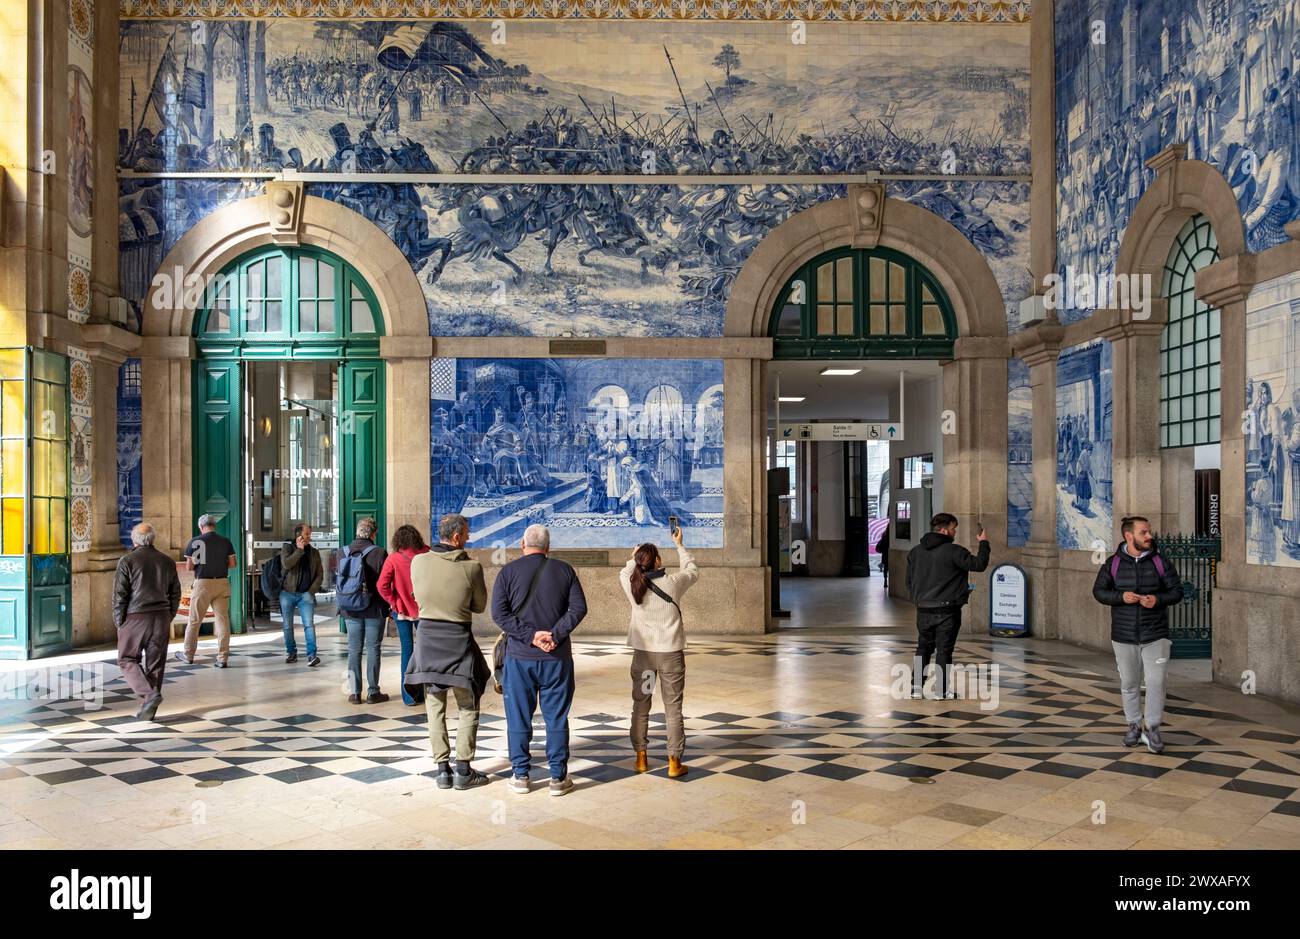 Les visiteurs admirent la peinture murale en carreaux d'azulejo à la gare ferroviaire de São Bento, Porto, Portugal Banque D'Images